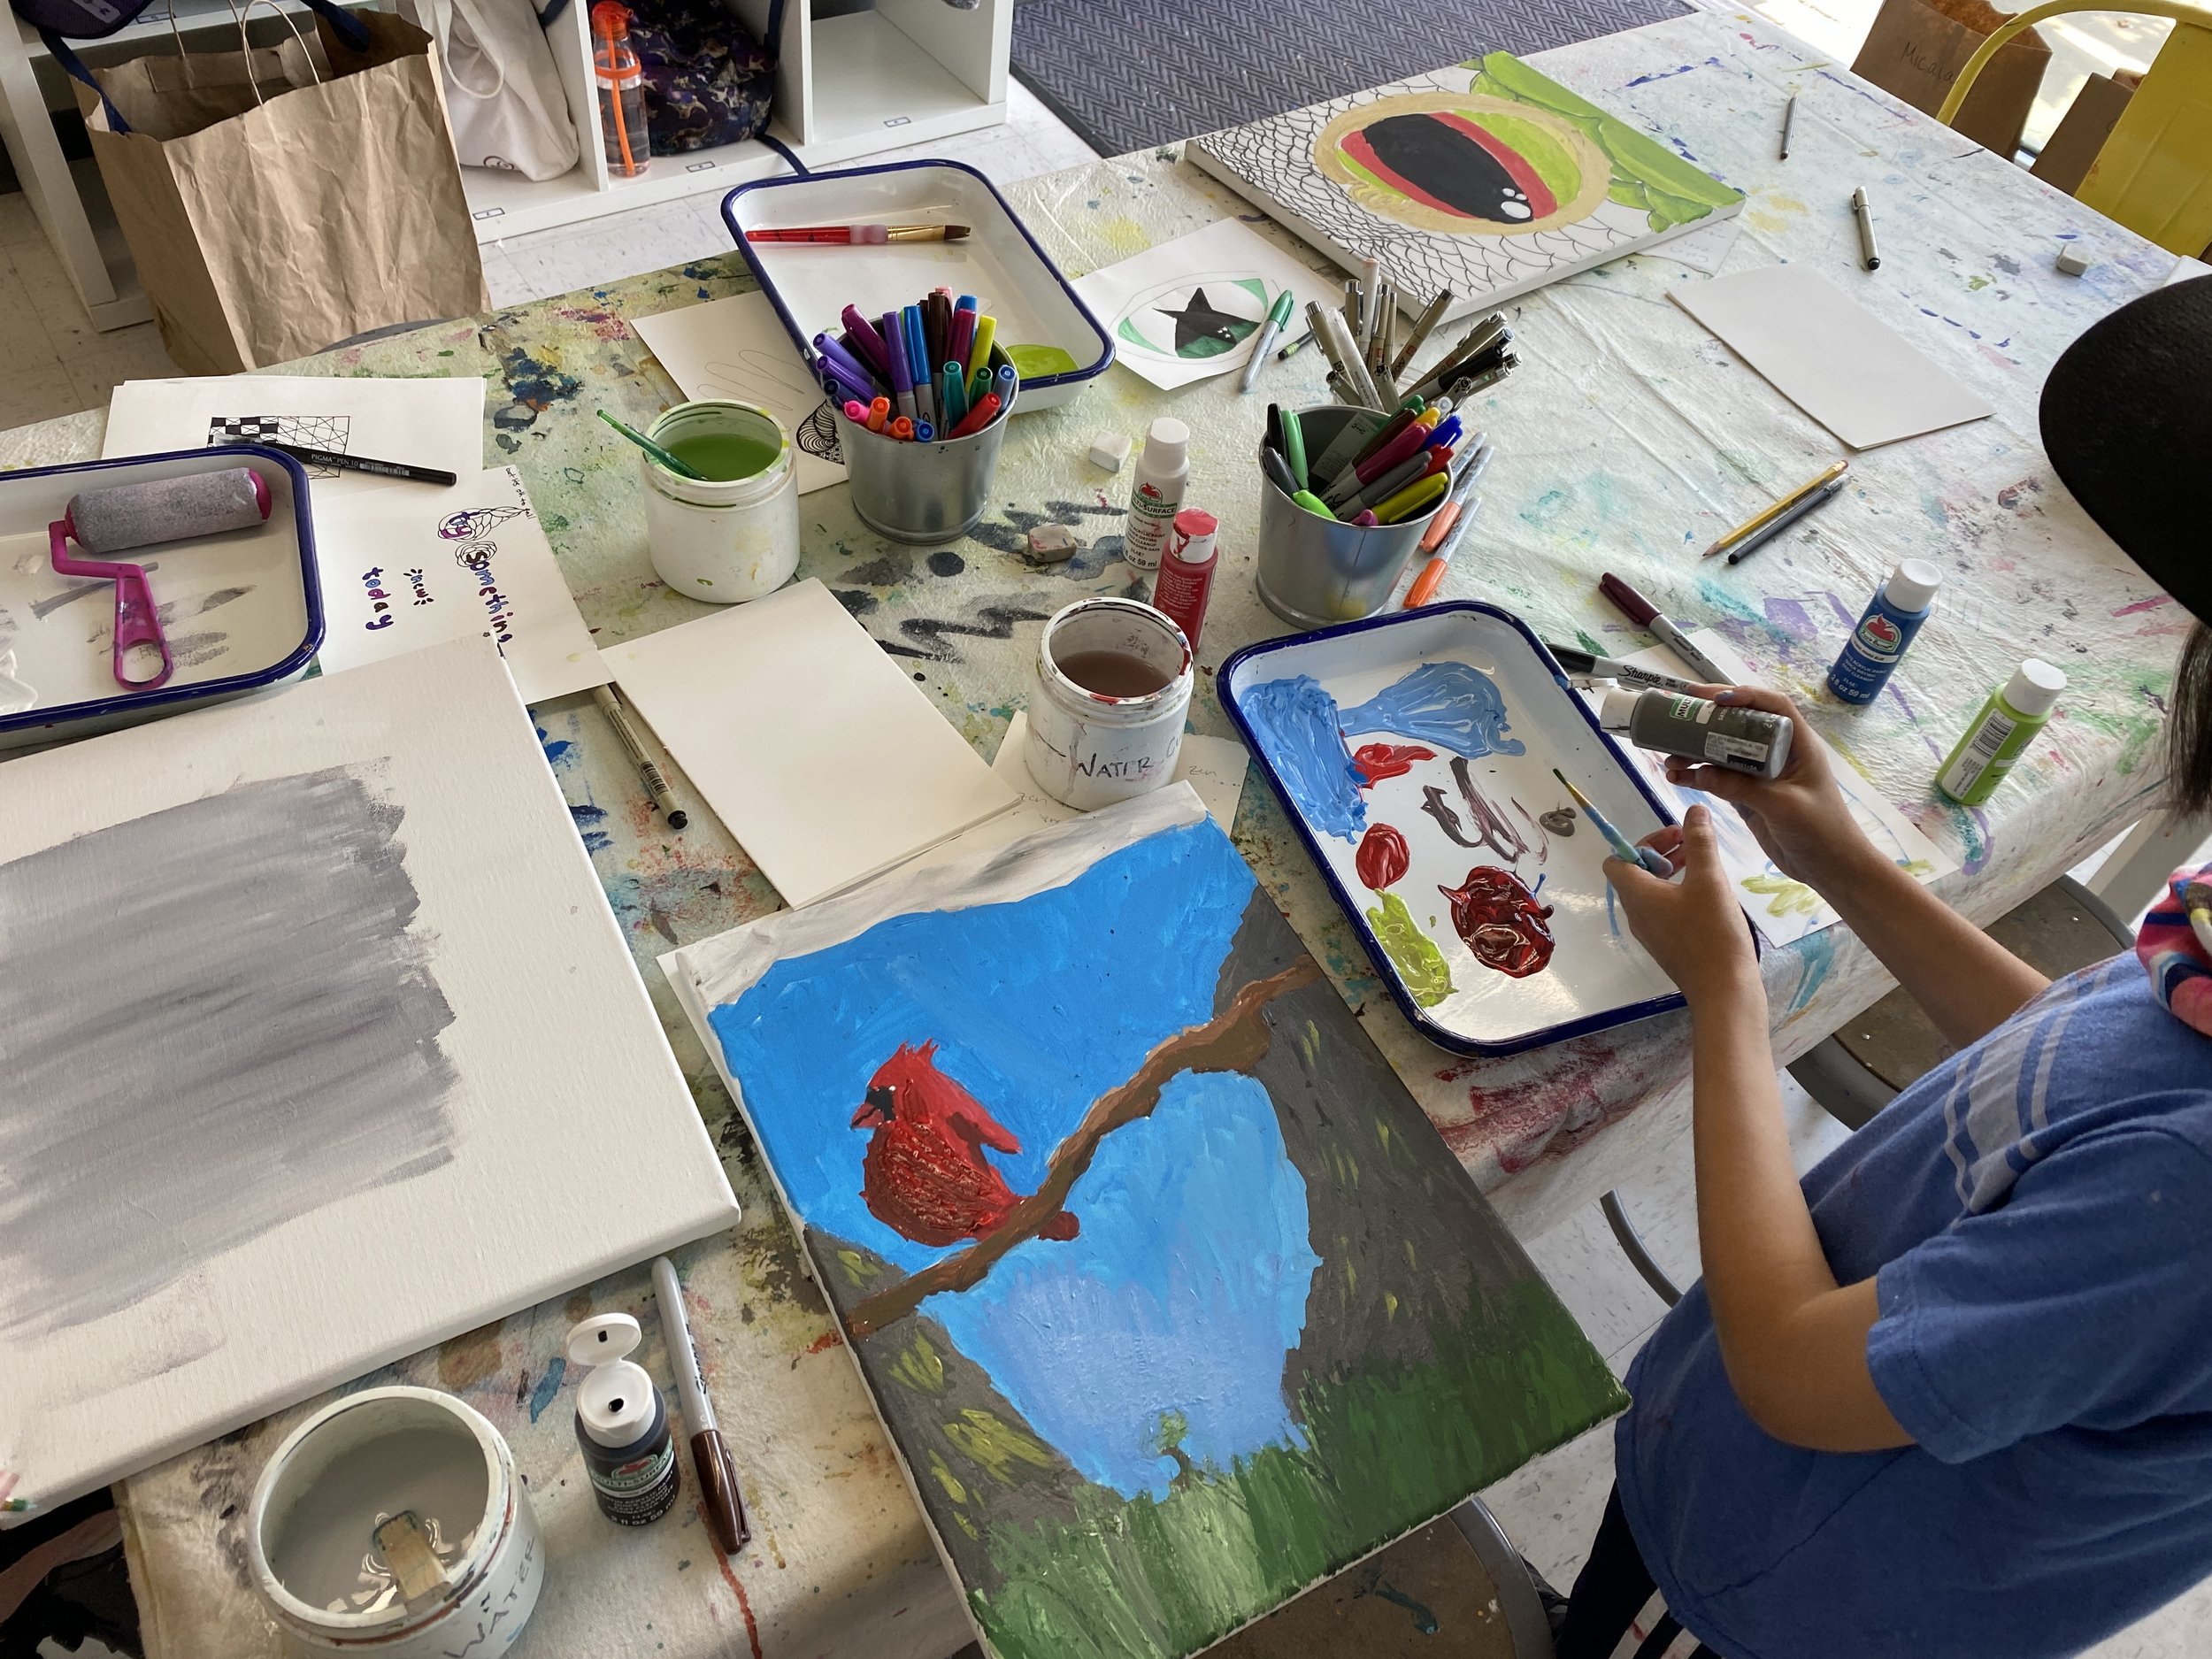 artSPARK Creative Studio: kids art classes, camps, & parties in